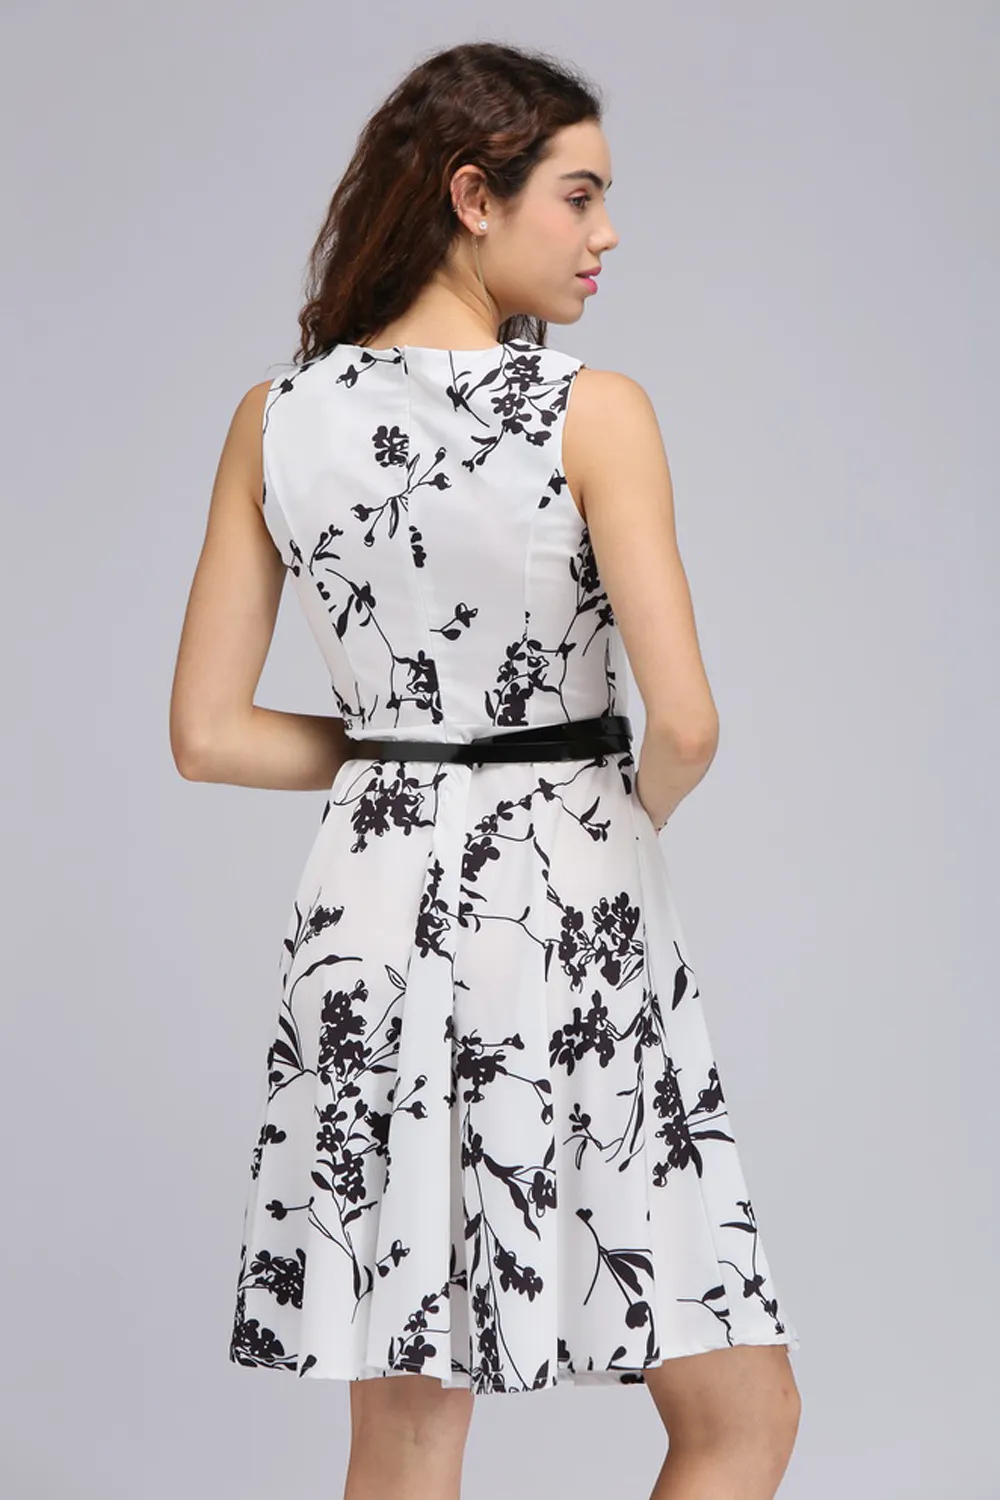 Bläck panting stil vintage klänning 50s 60s retro för kvinnor blommor tryckta korta festklänningar med bälte vestido vintage fs0005